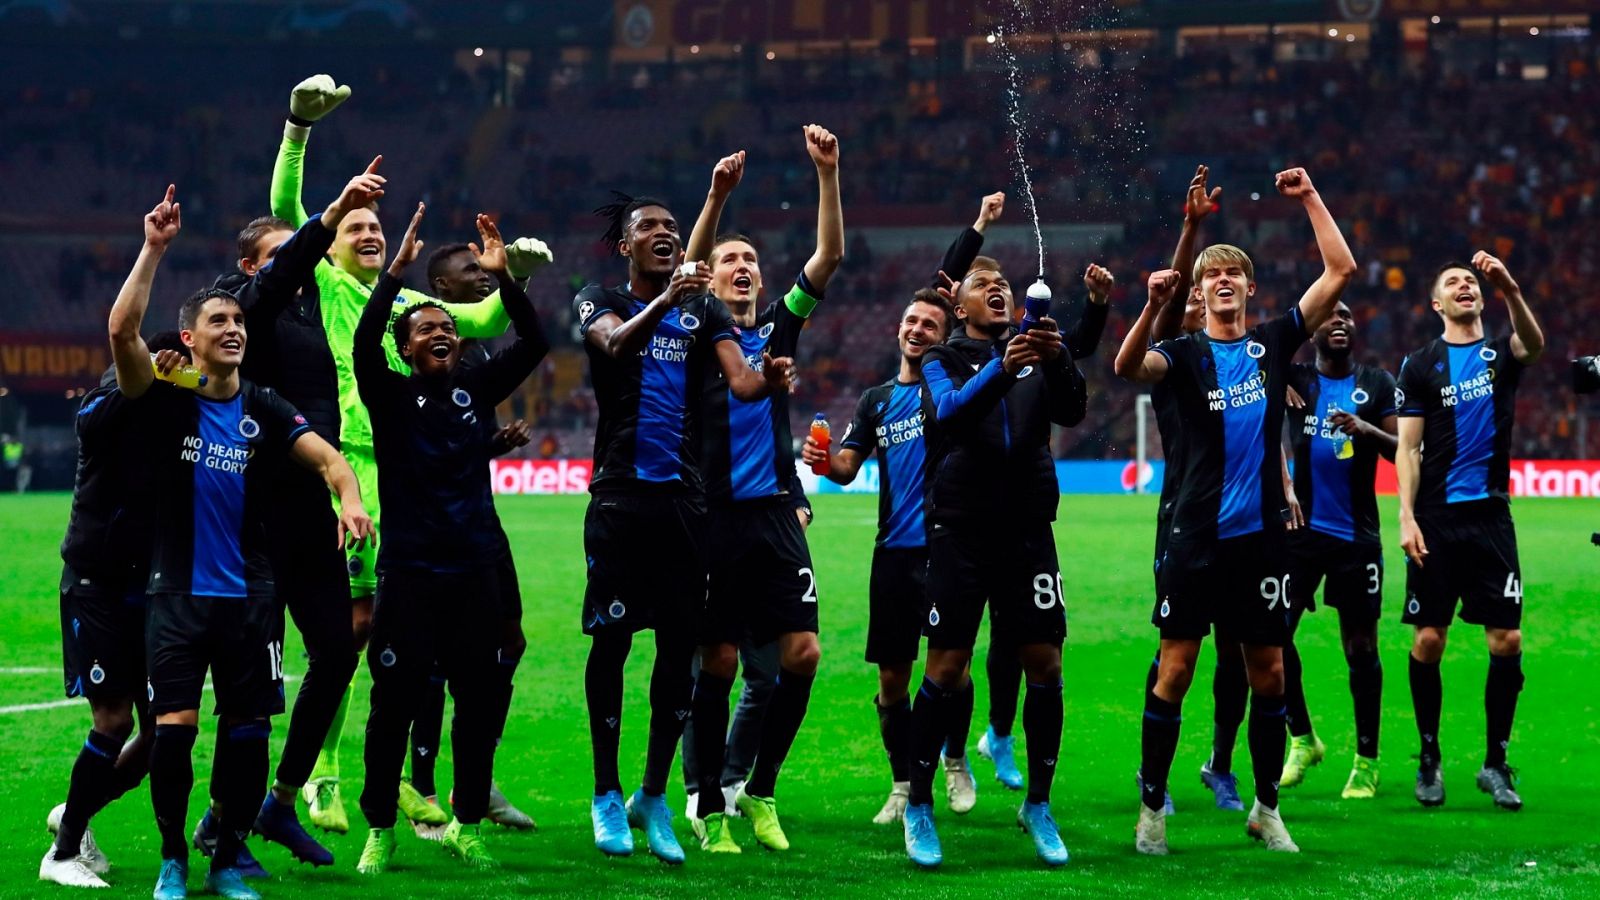  Varios jugadores del Brujas celebran la victoria en un partido de Champions League